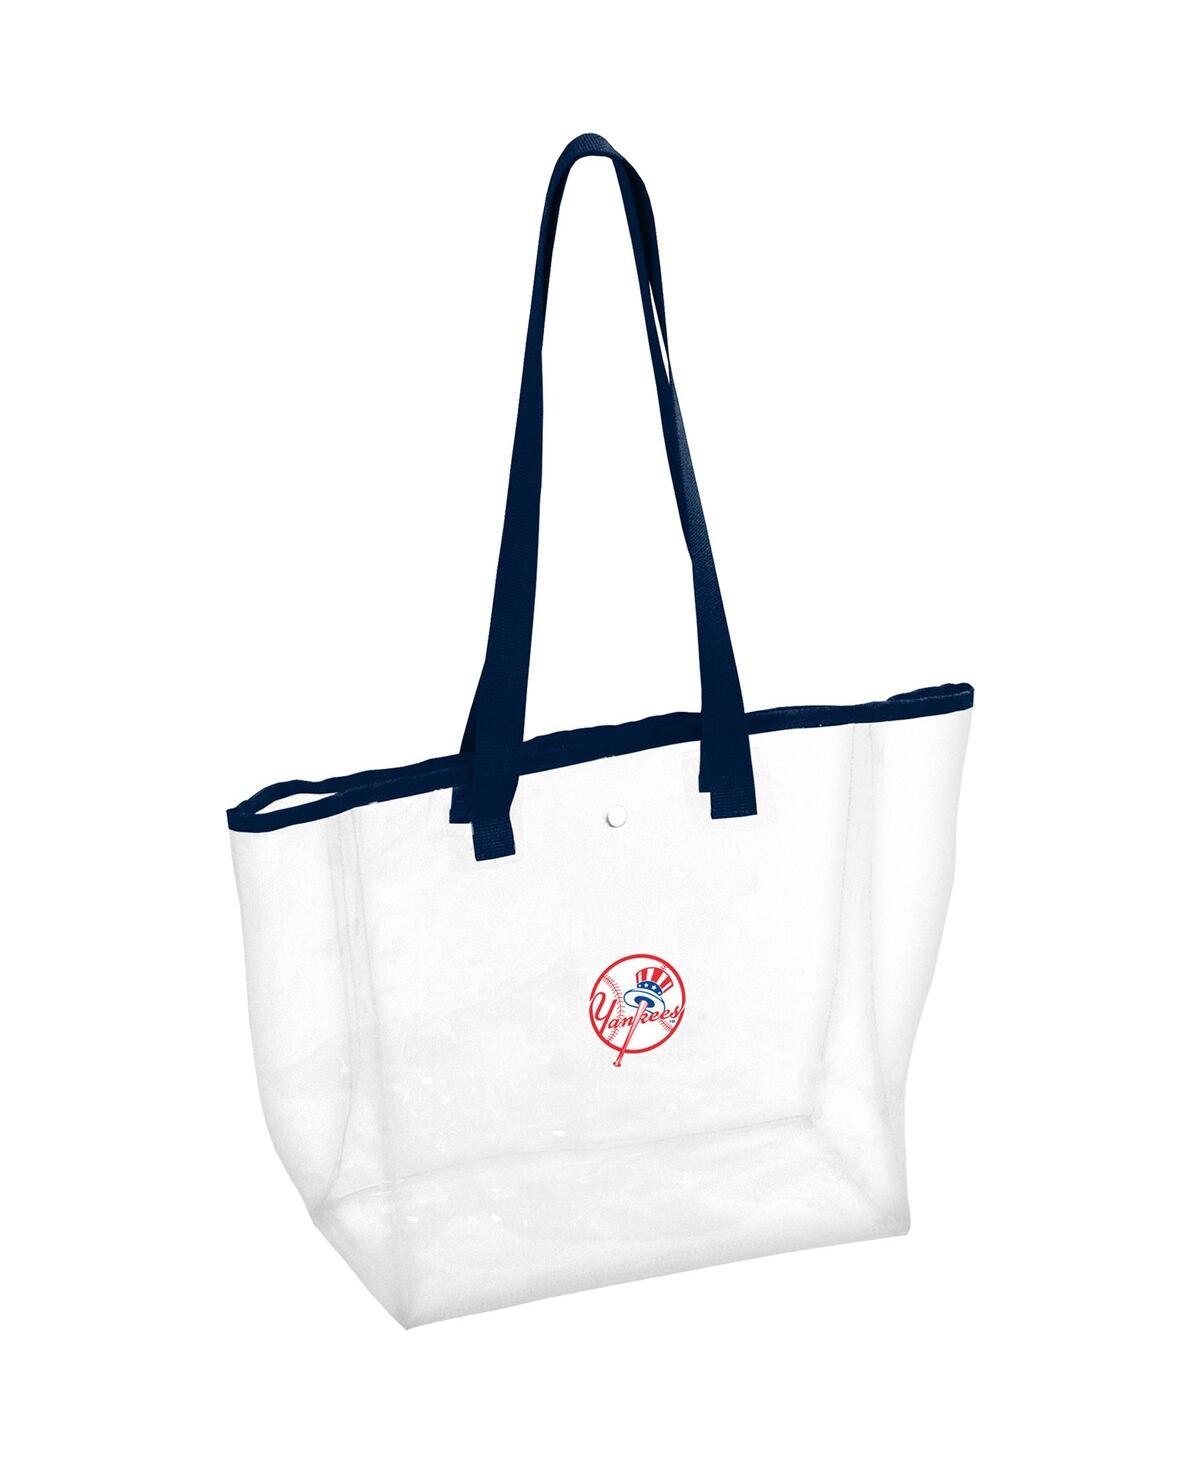 Women's New York Yankees Stadium Clear Tote Bag - Tan